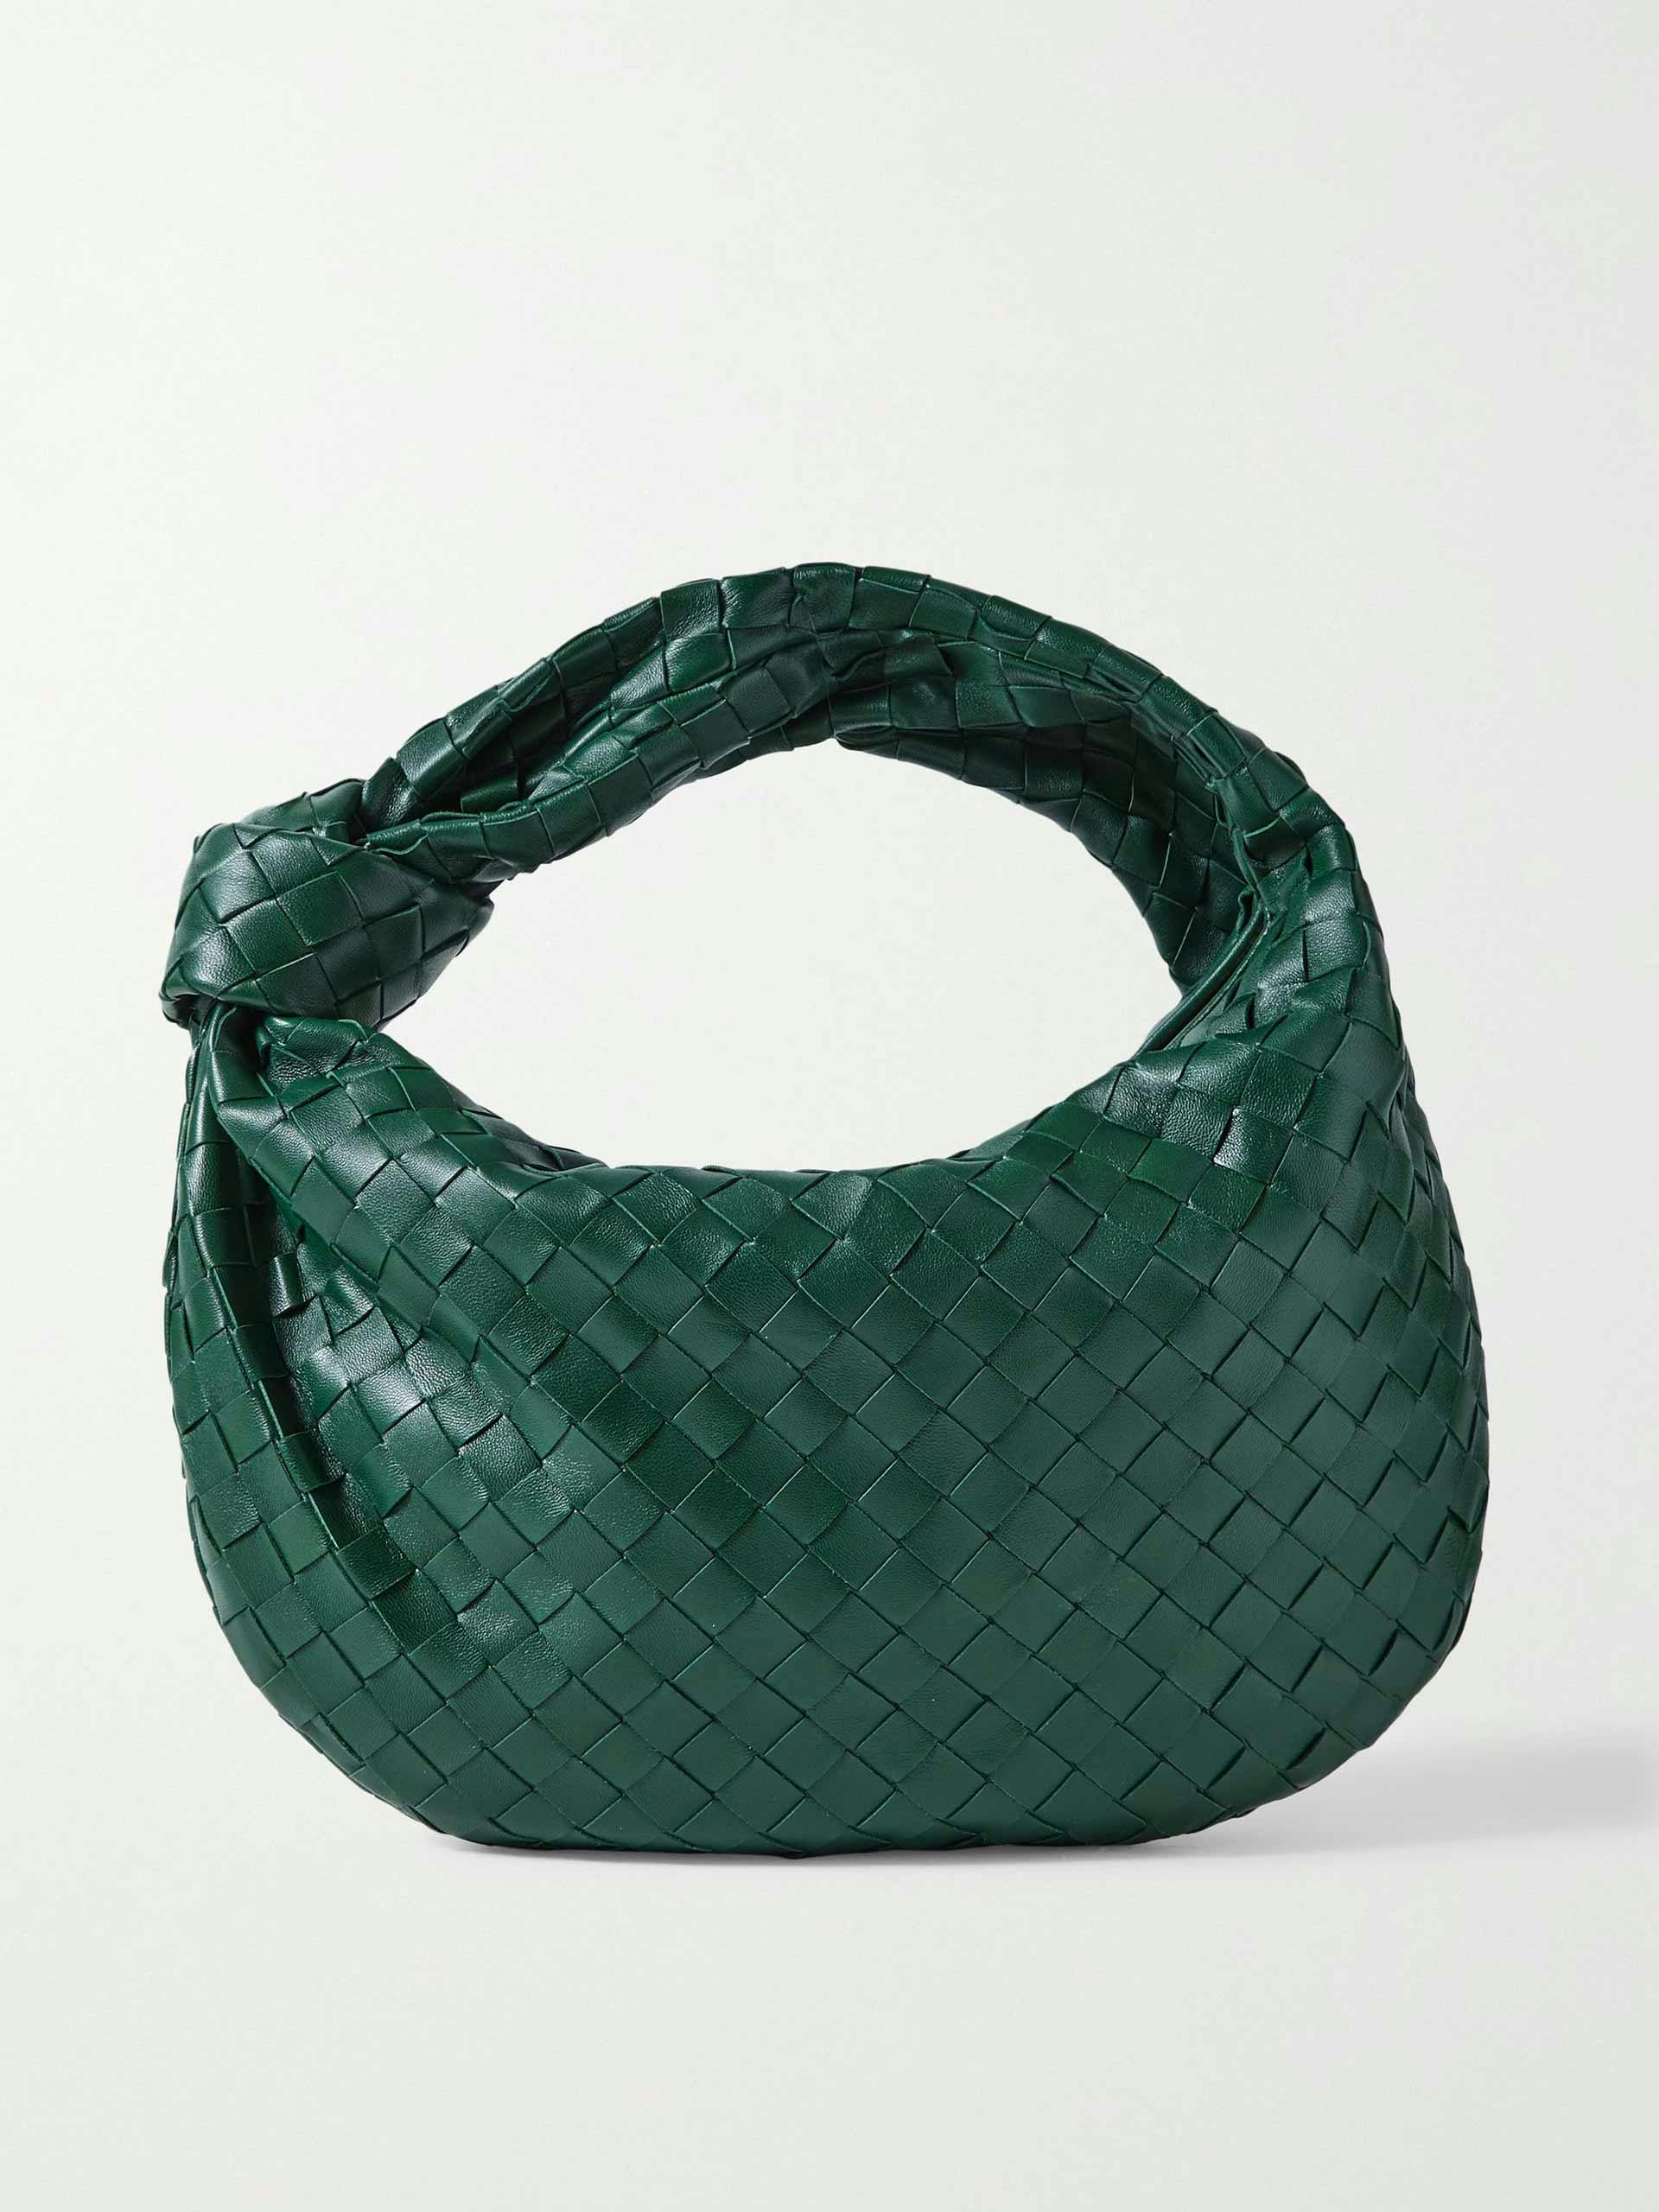 Dark green woven leather shoulder bag